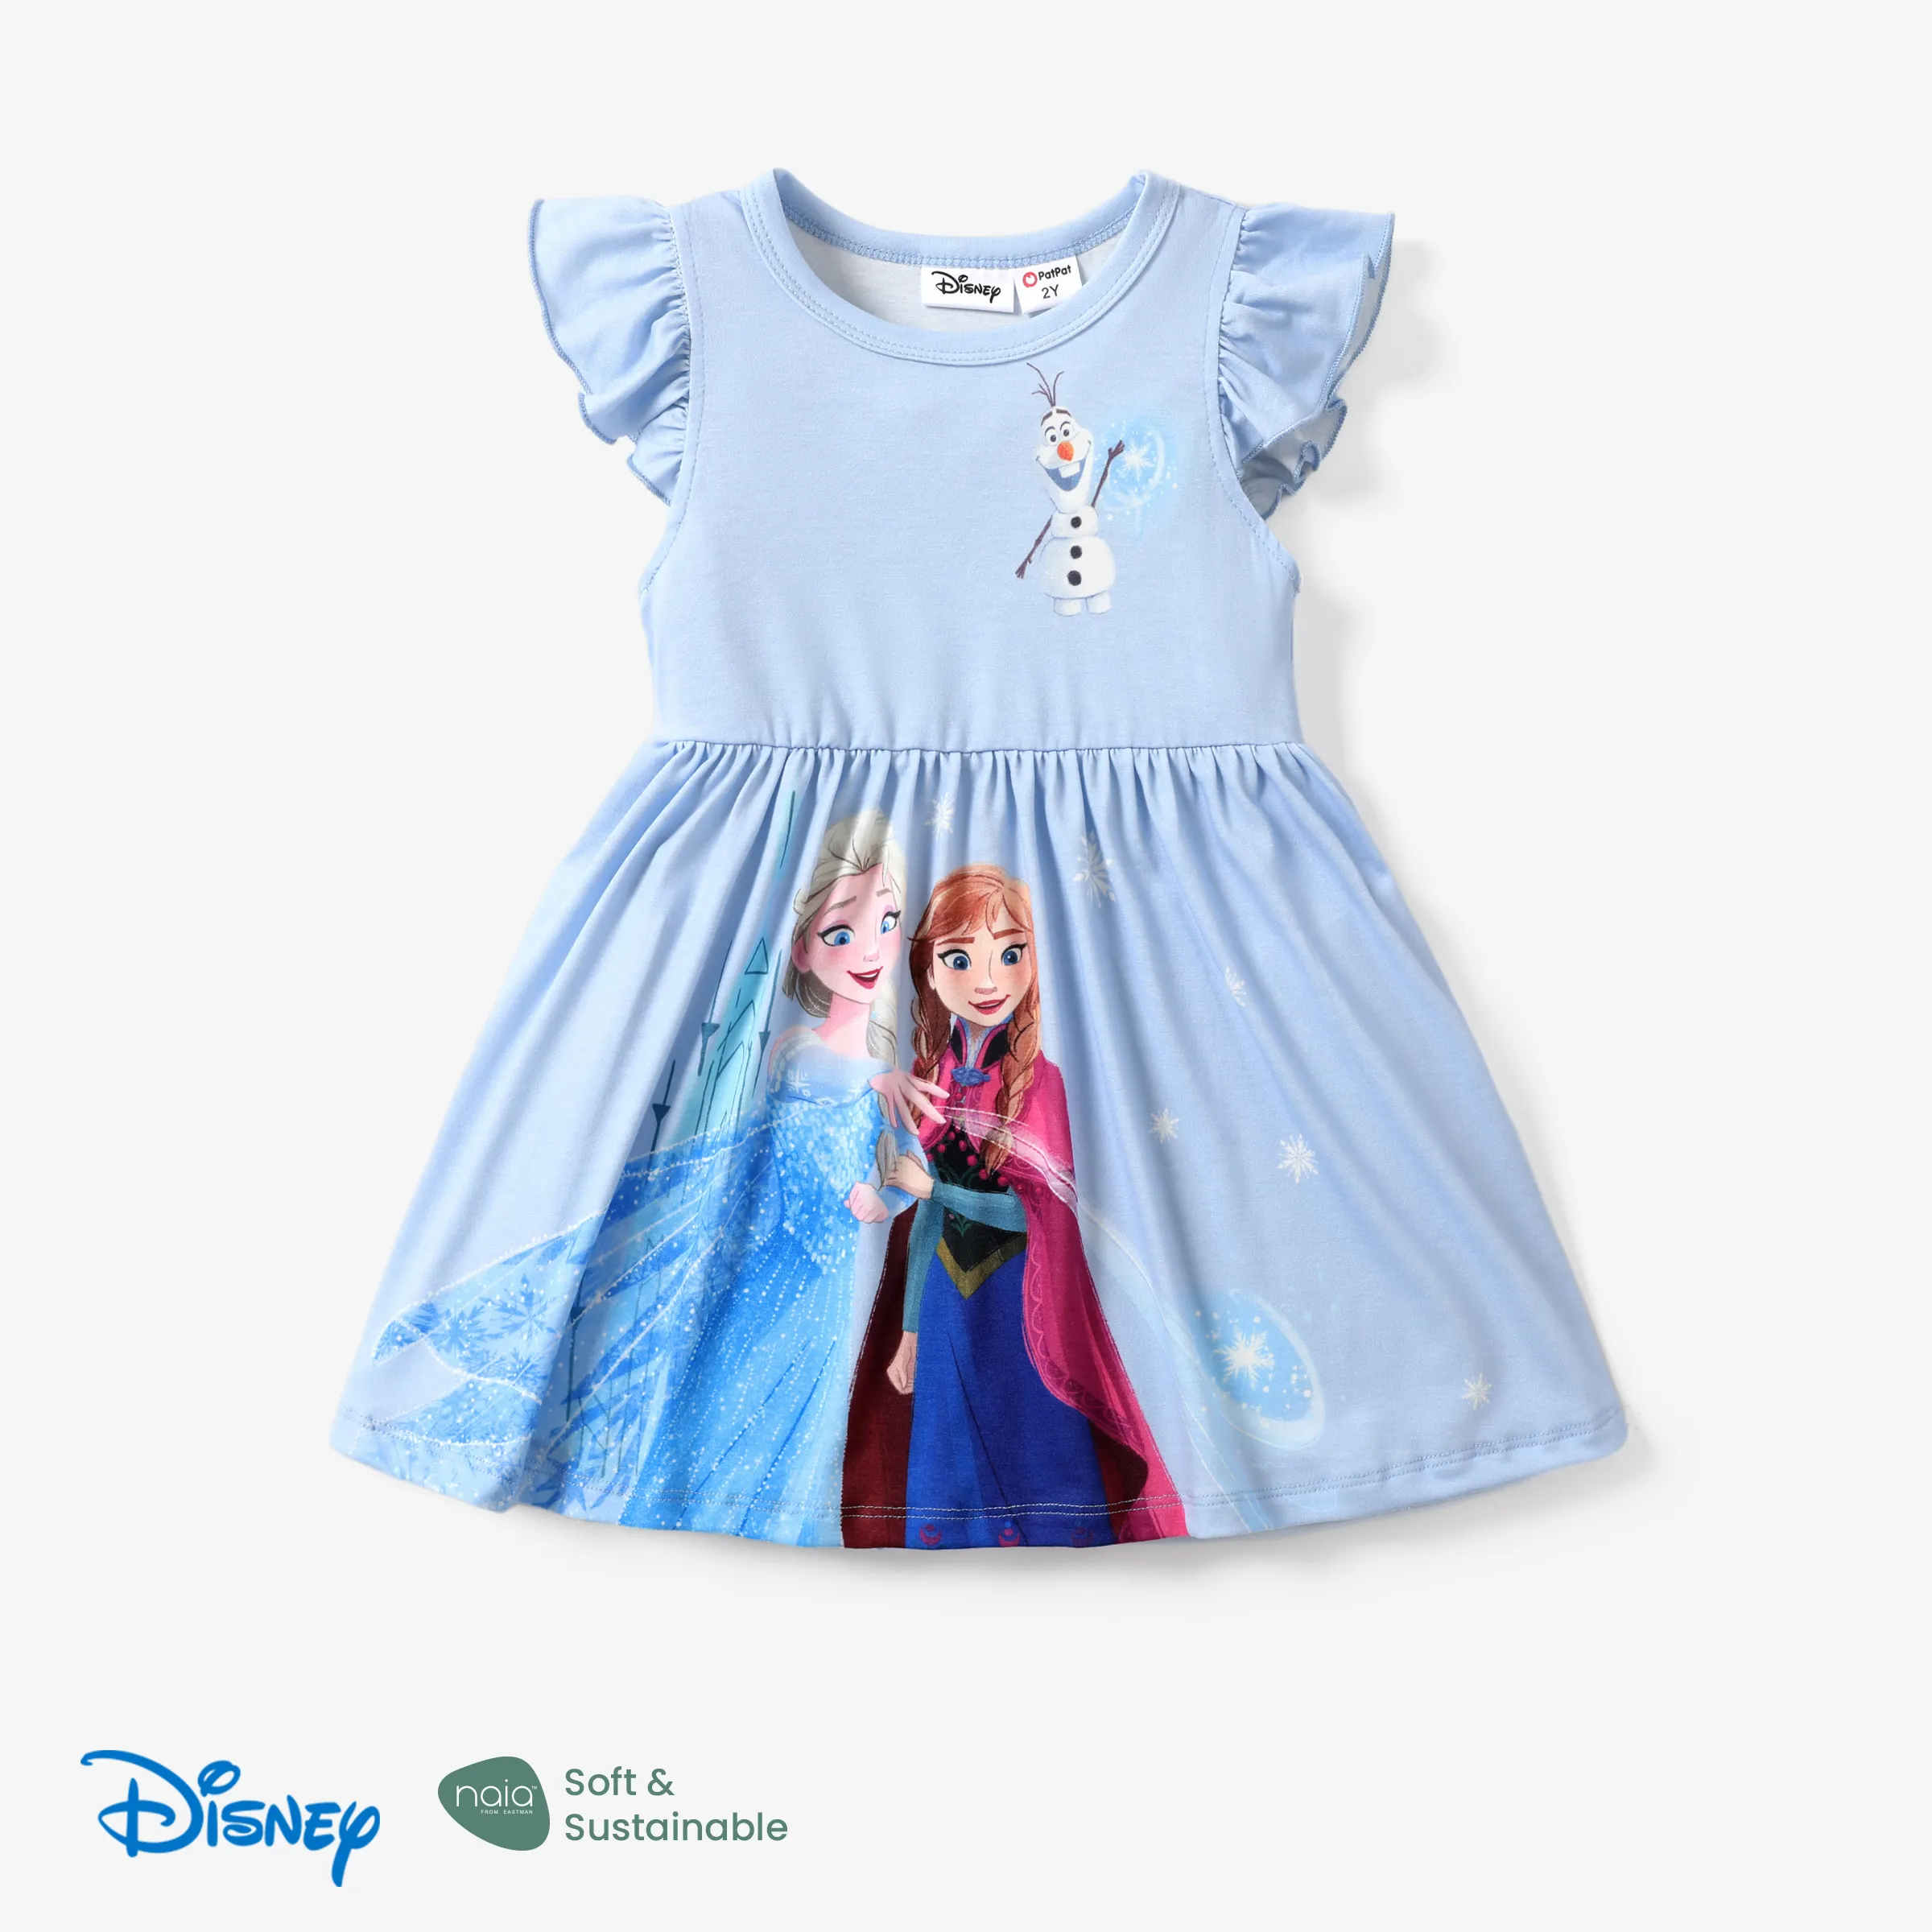 

Disney Frozen Elsa & Anna 1pc Naia™ Character Print Ruffled/Sleeveless Dress